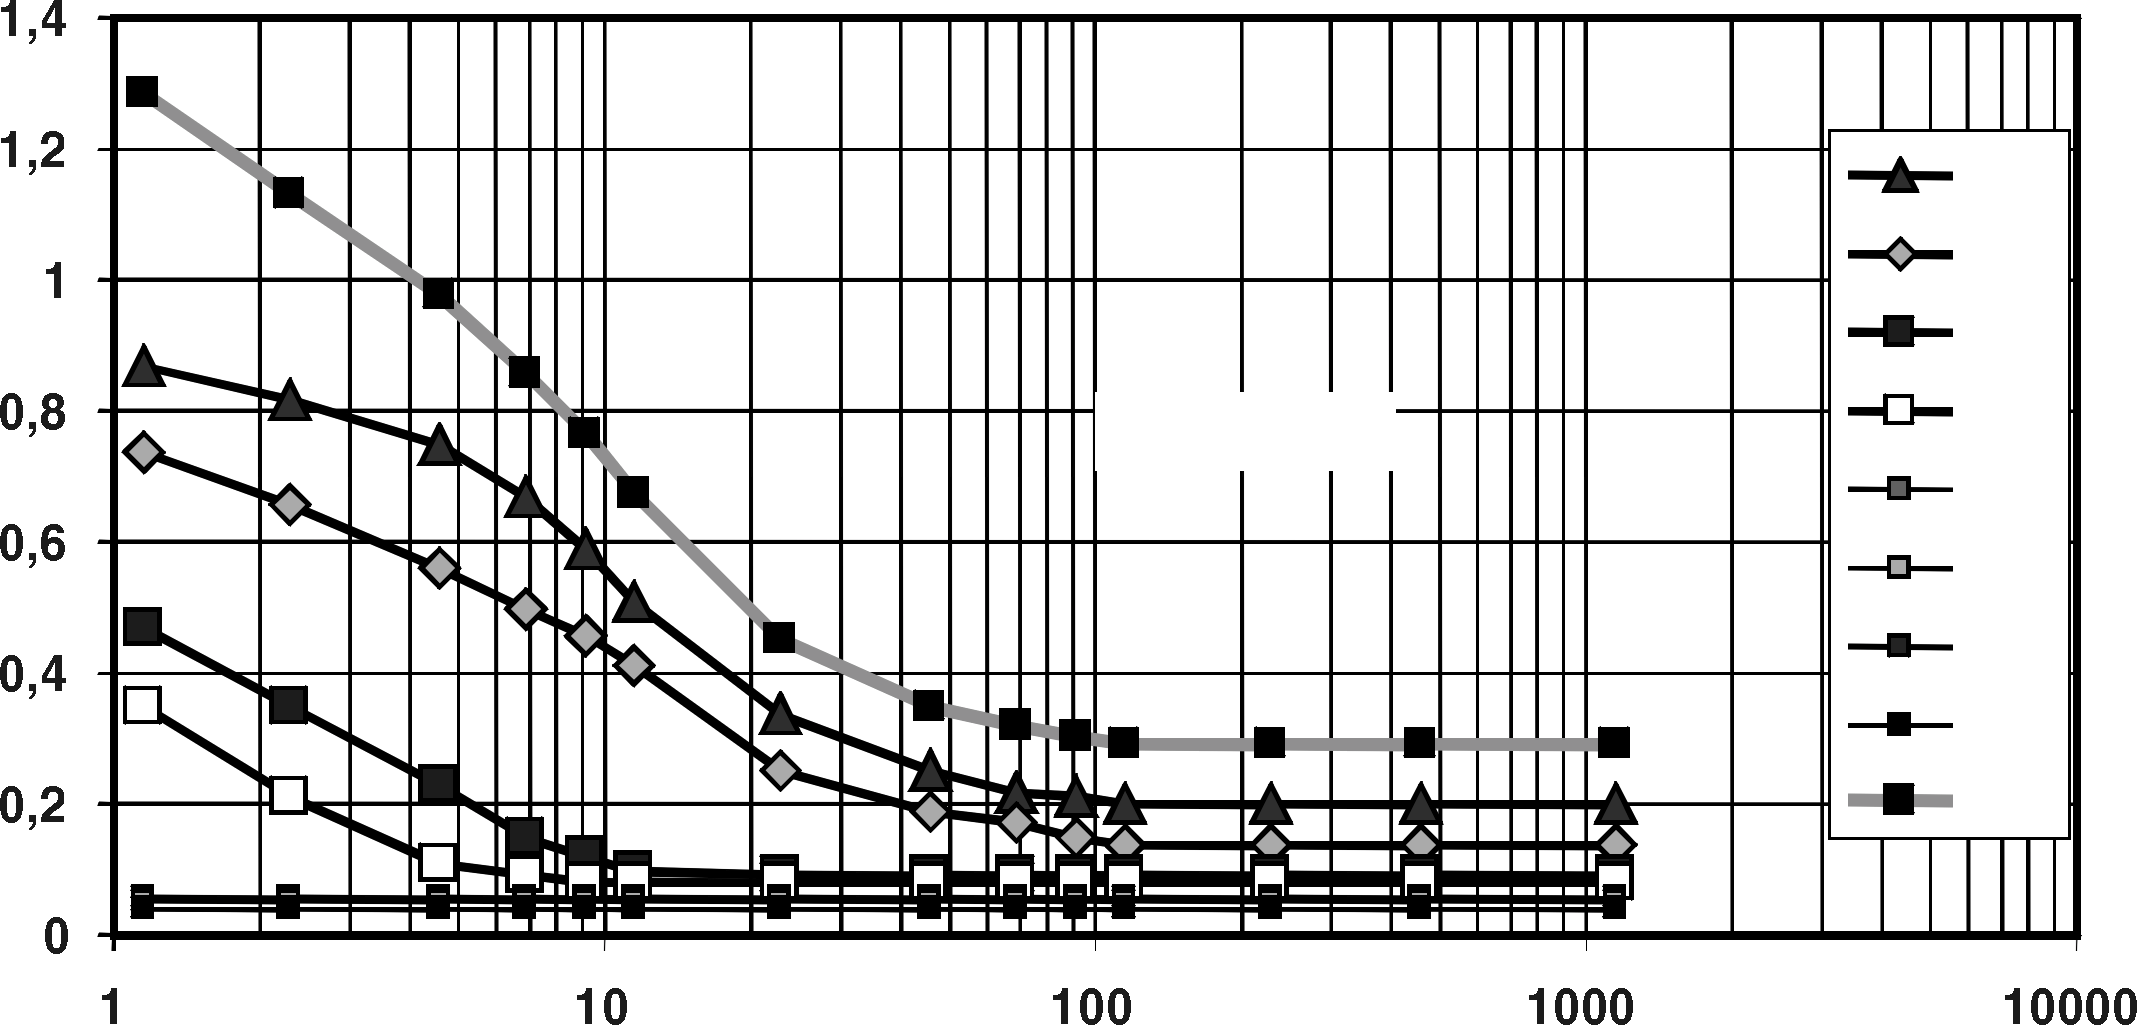 Come ridurre le armoniche attraverso modifiche strutturali del sistema di azionamento in c.a. La tabella nella Figura 7.5 mostra l'effeto delle dimensioni dell'induttanza in c.c. sulle armoniche.